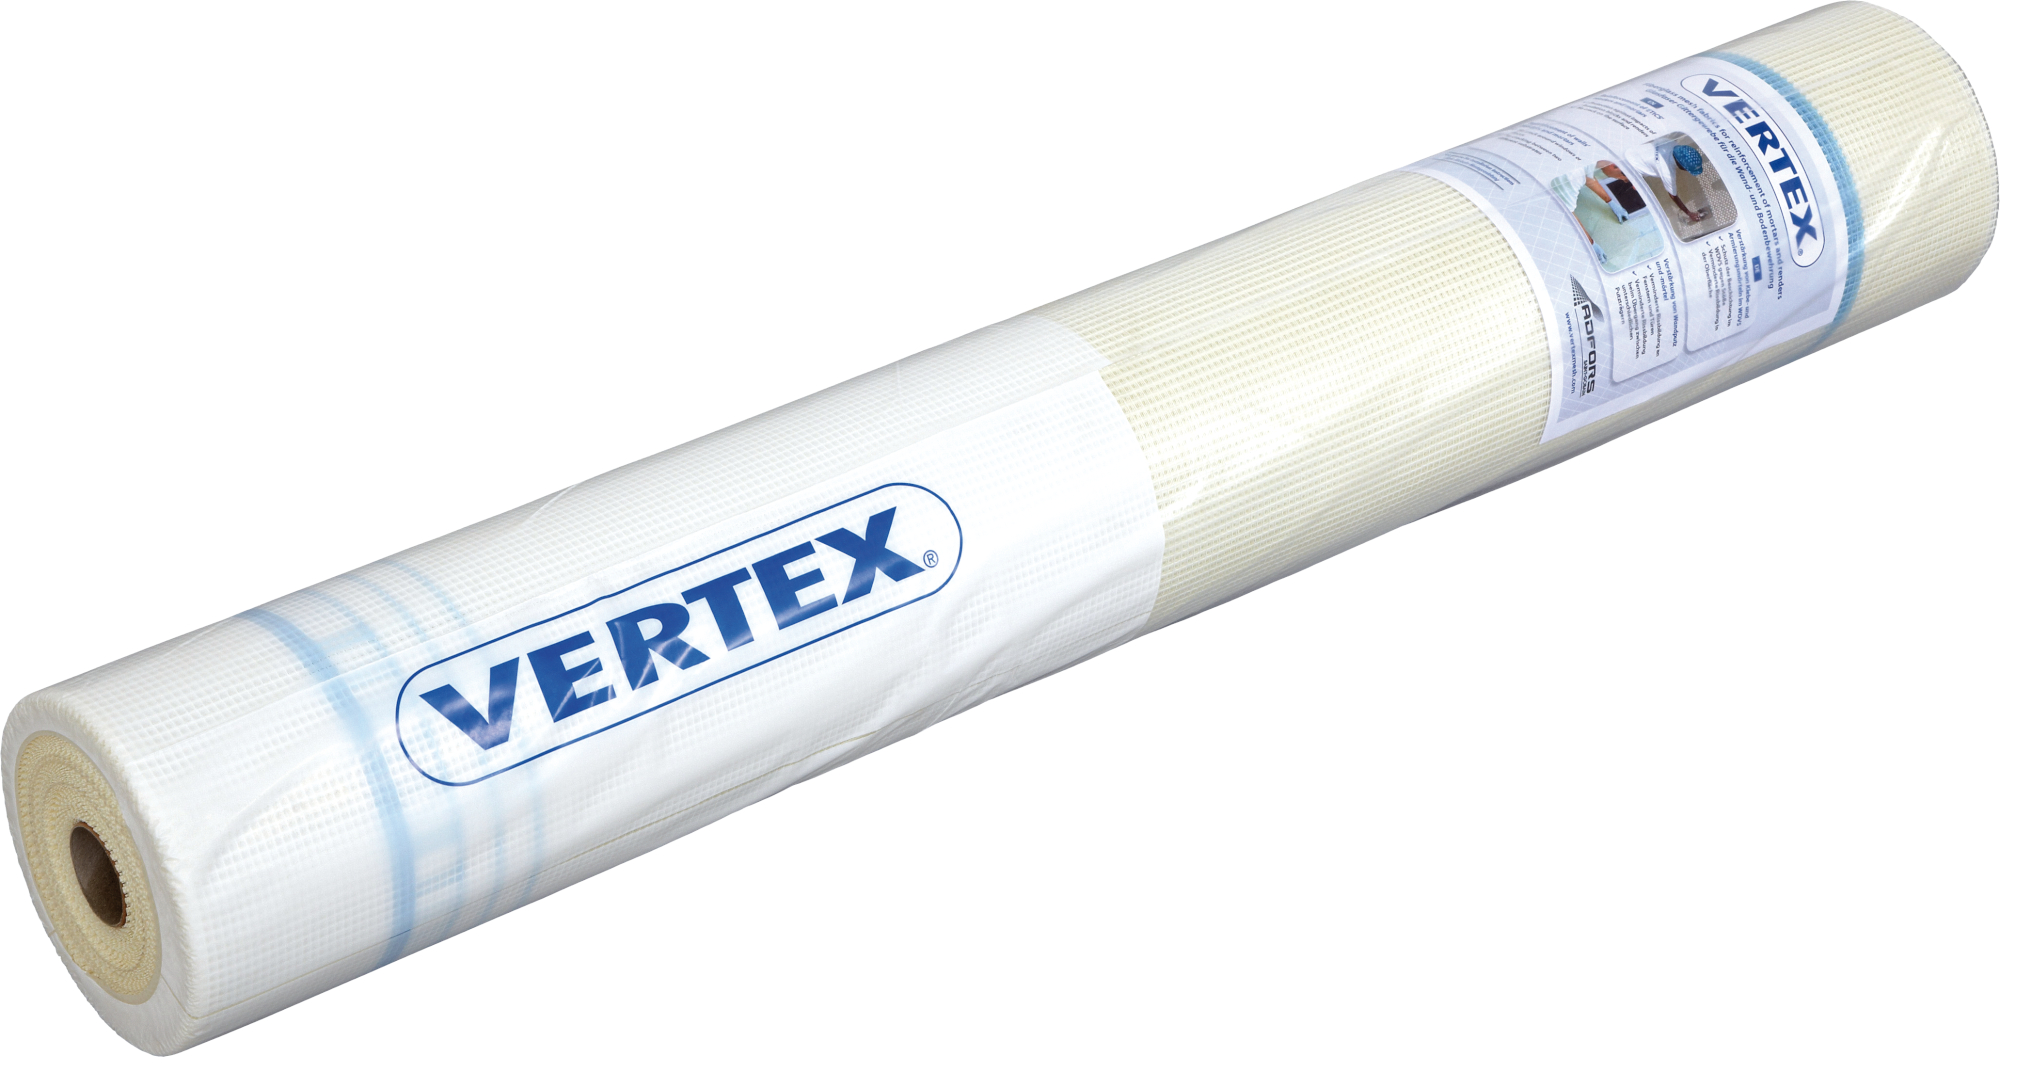 Tkanina výztužná Vertex R117 145 g/m2 (55 m2/role) Vertex